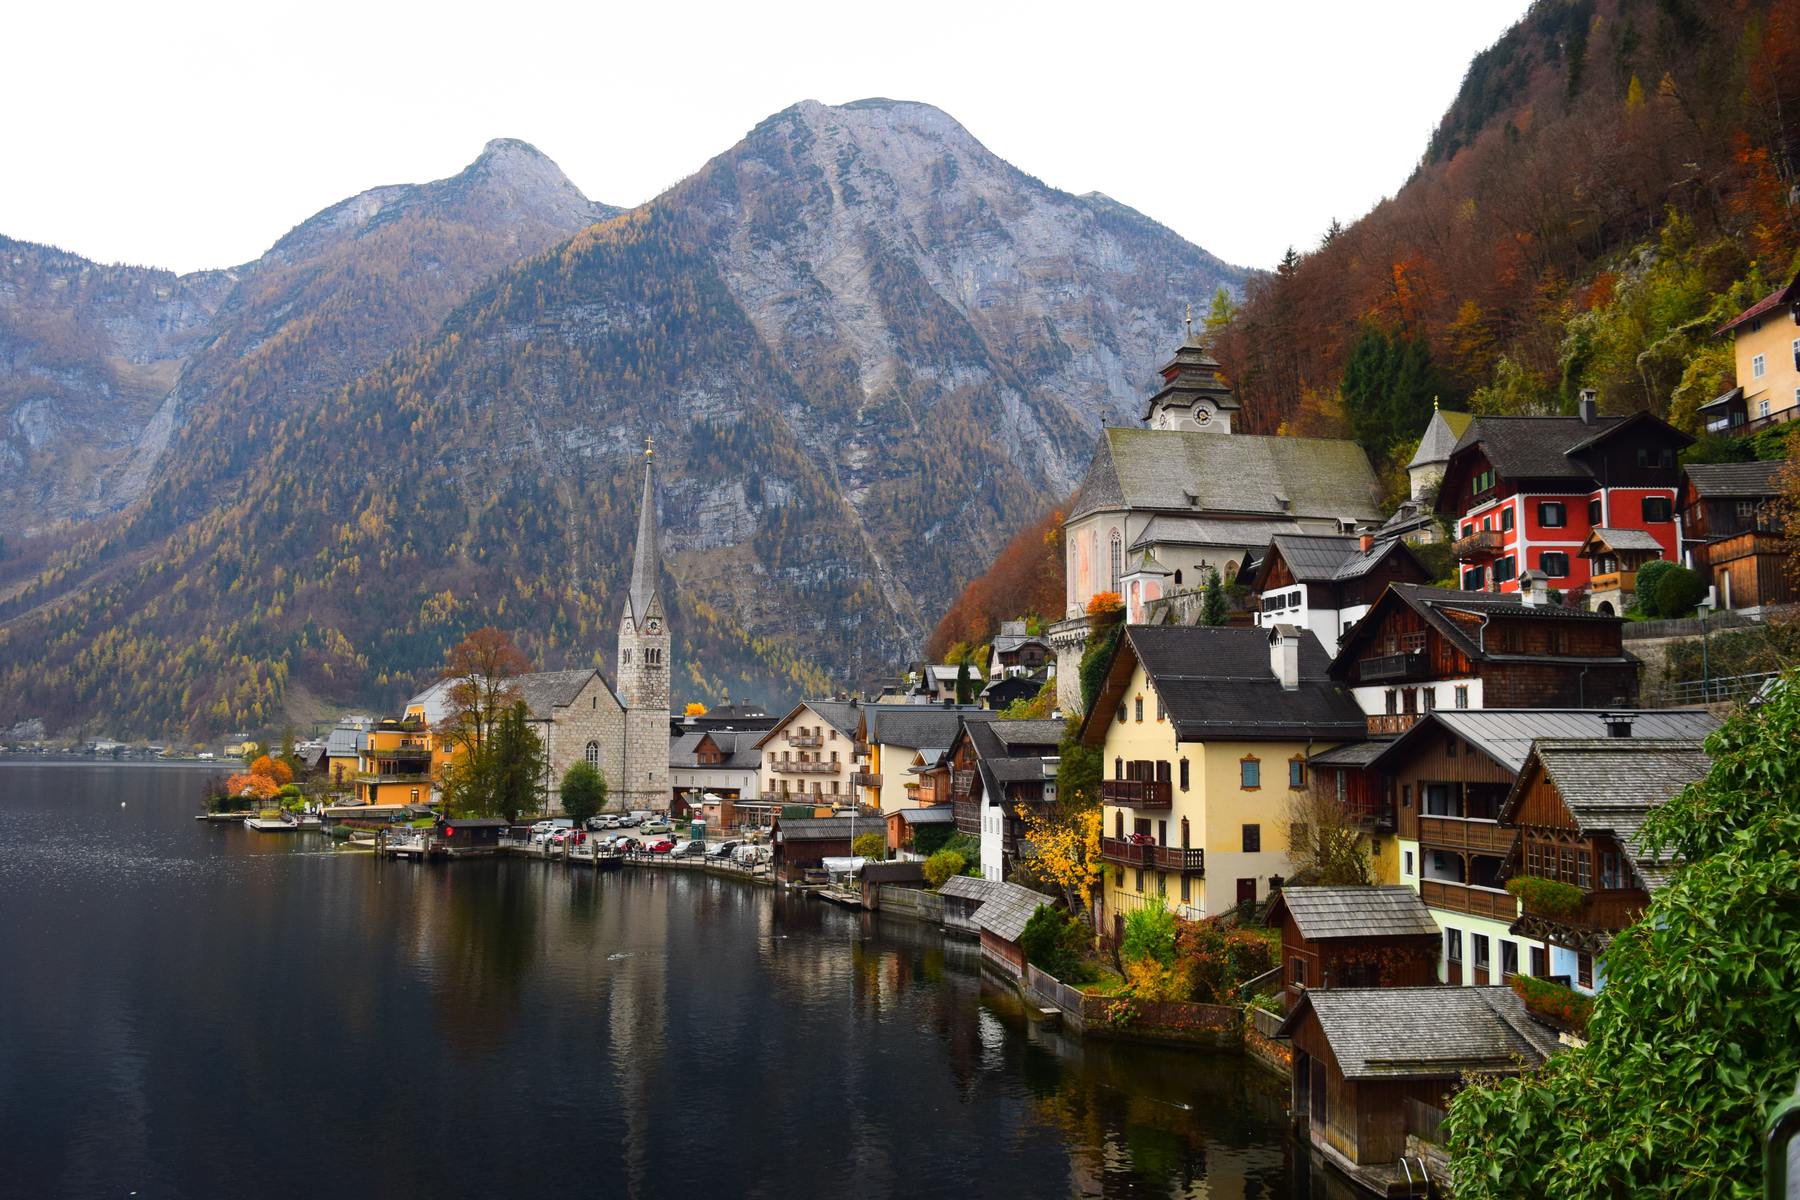 Austria in the autumn